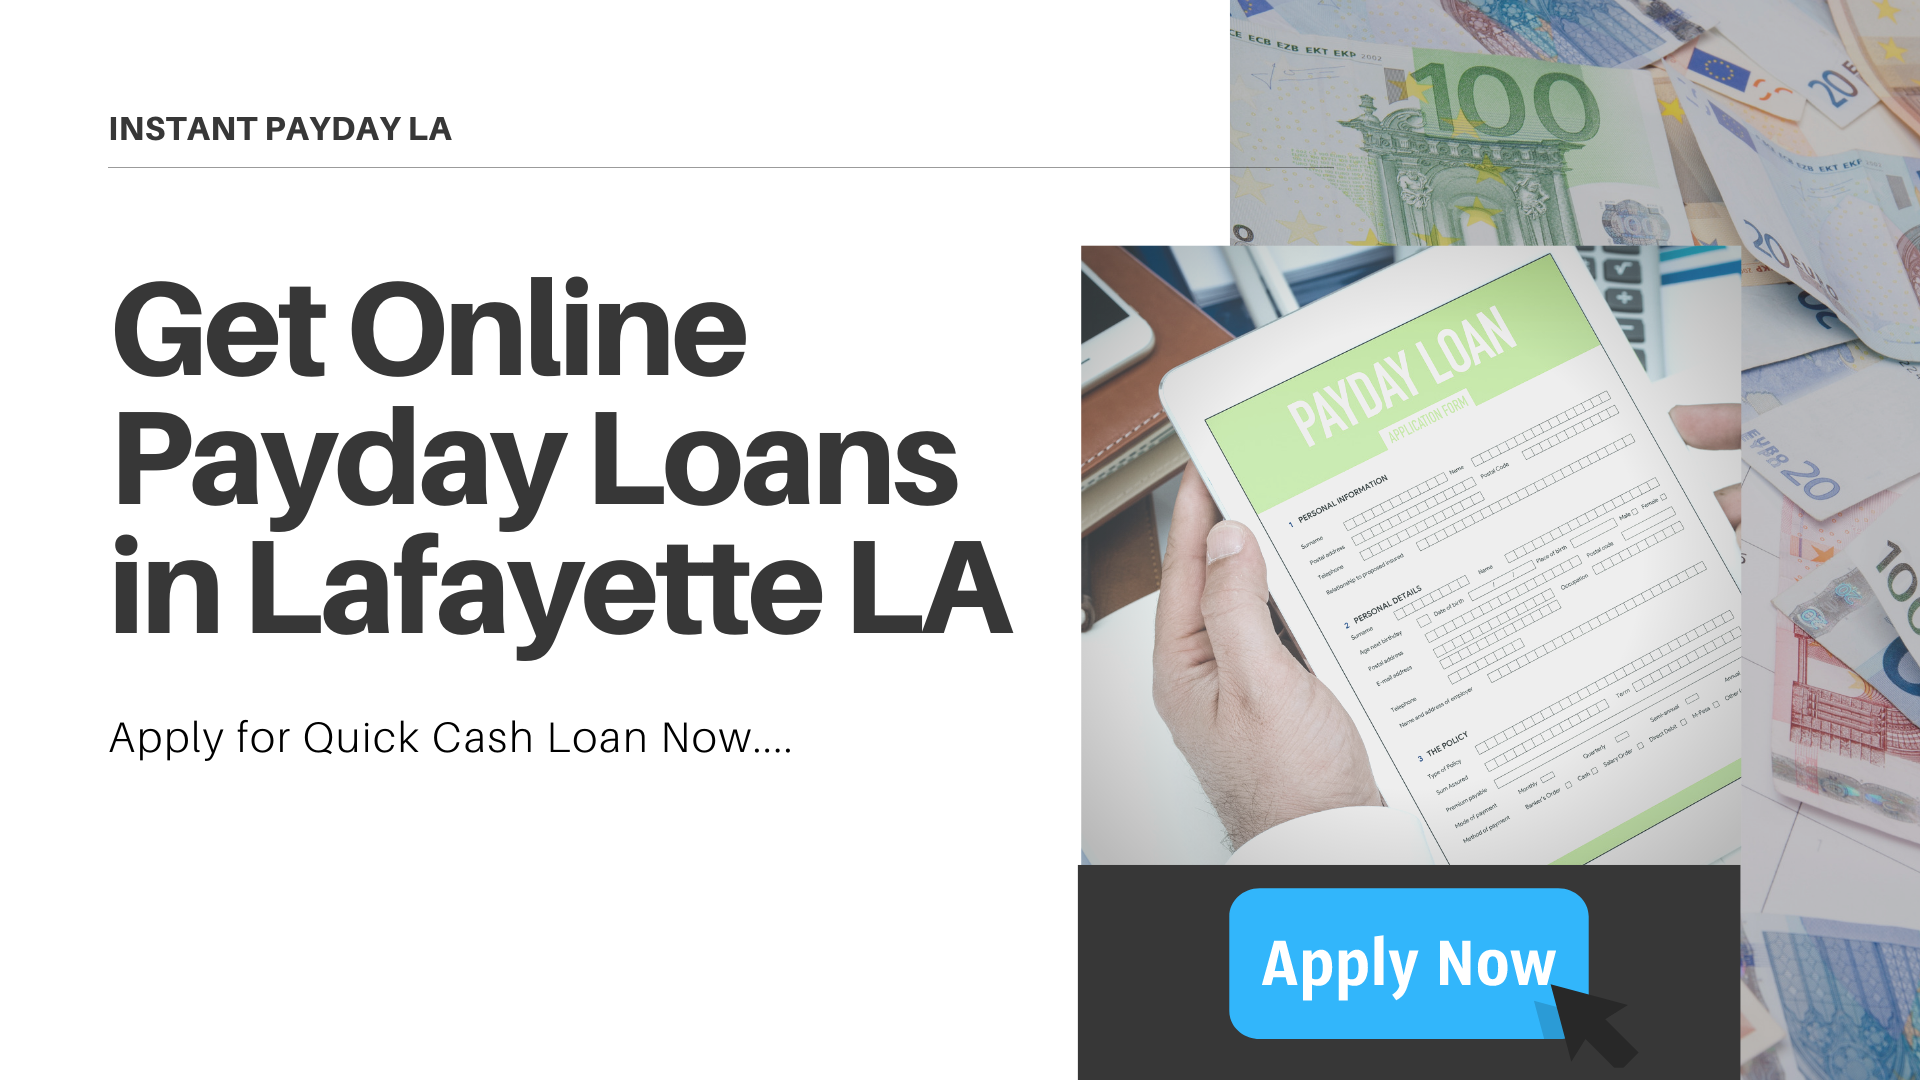 Getting Online Payday Loans in Lafayette LA